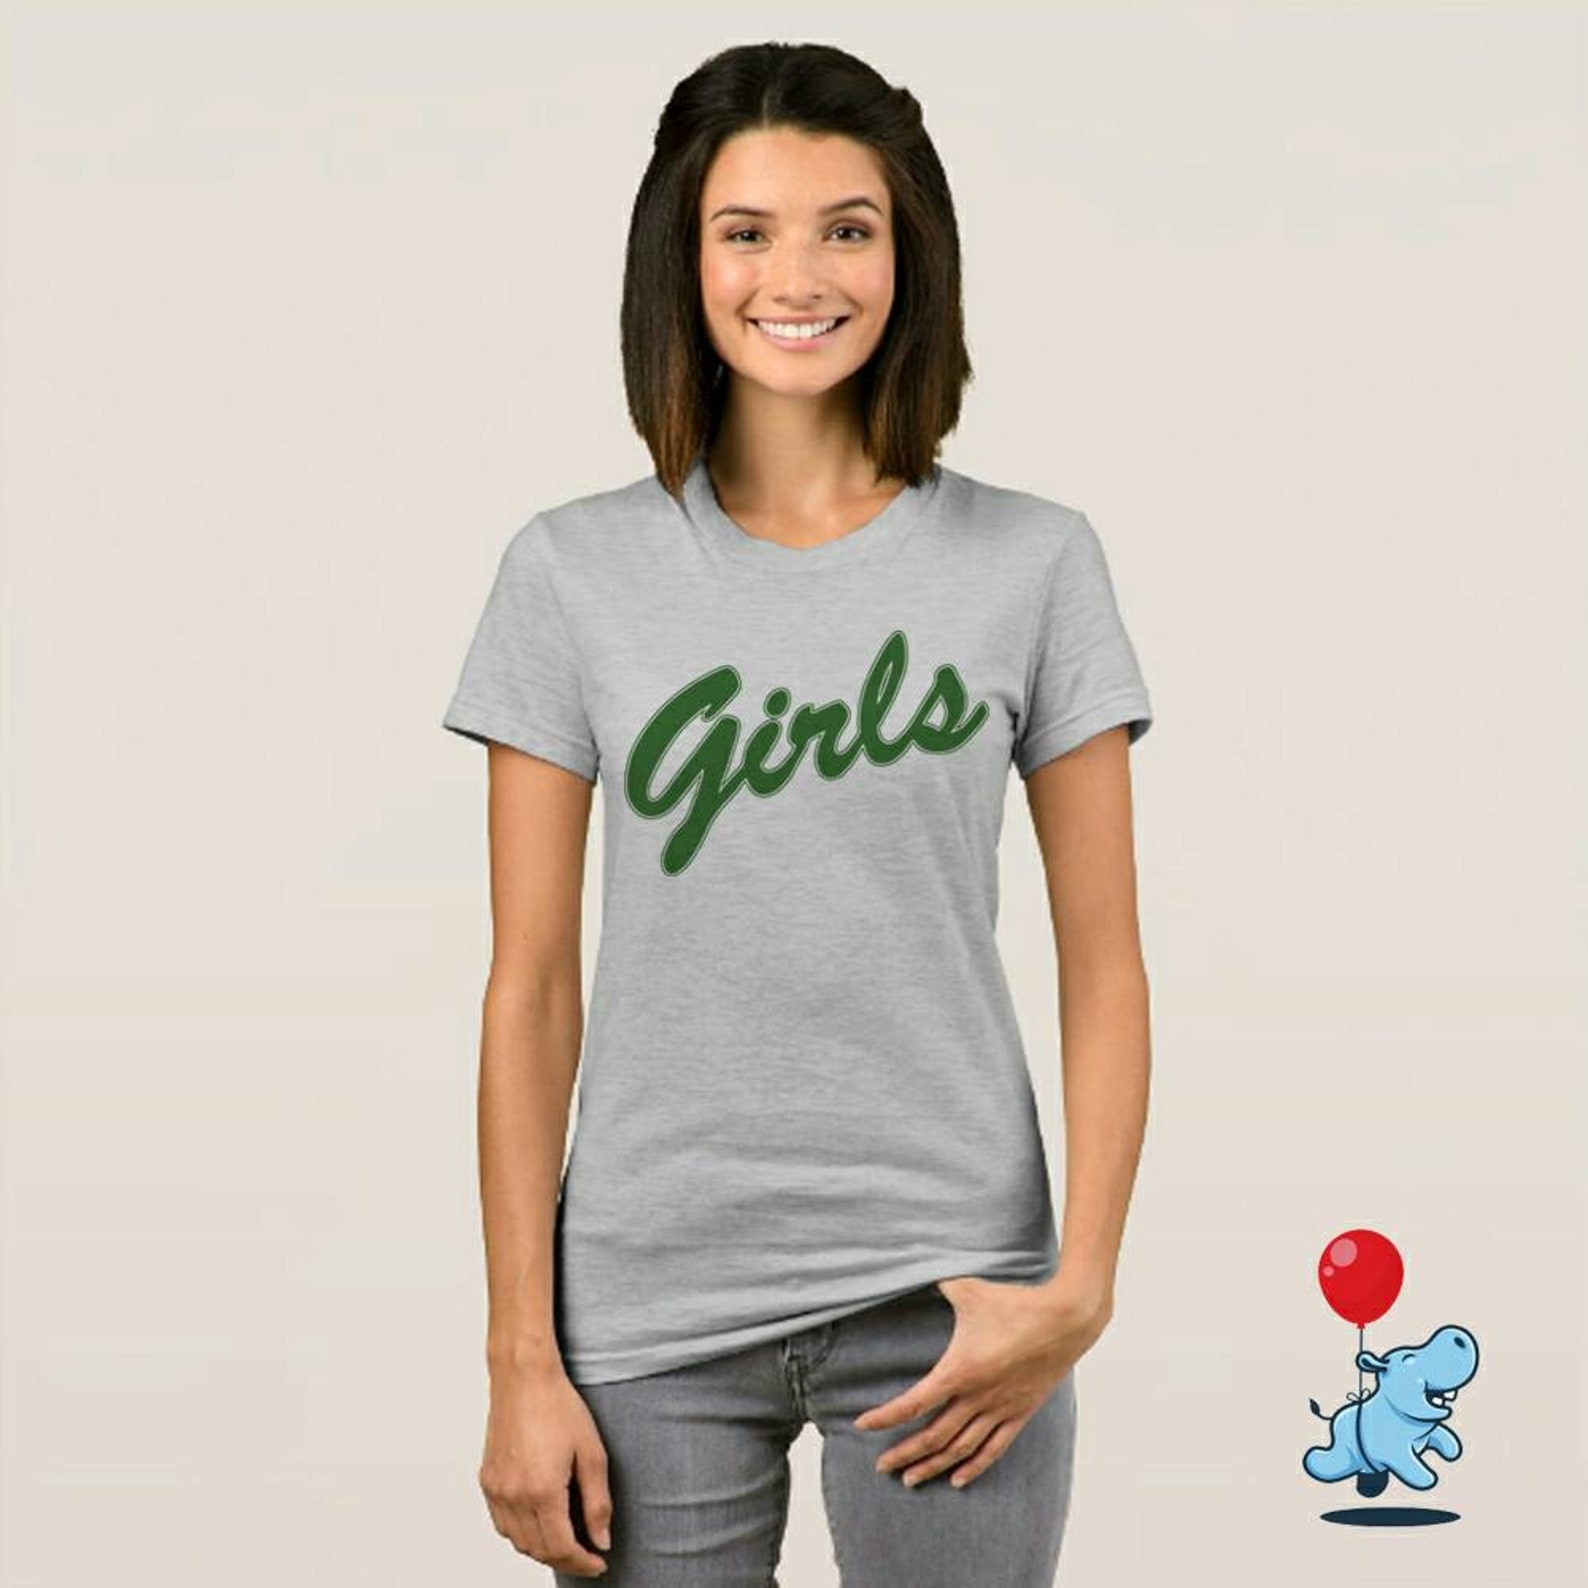 Girls T Shirt From Friends Tv Show Friends Shirt Rachel Shirt | Etsy